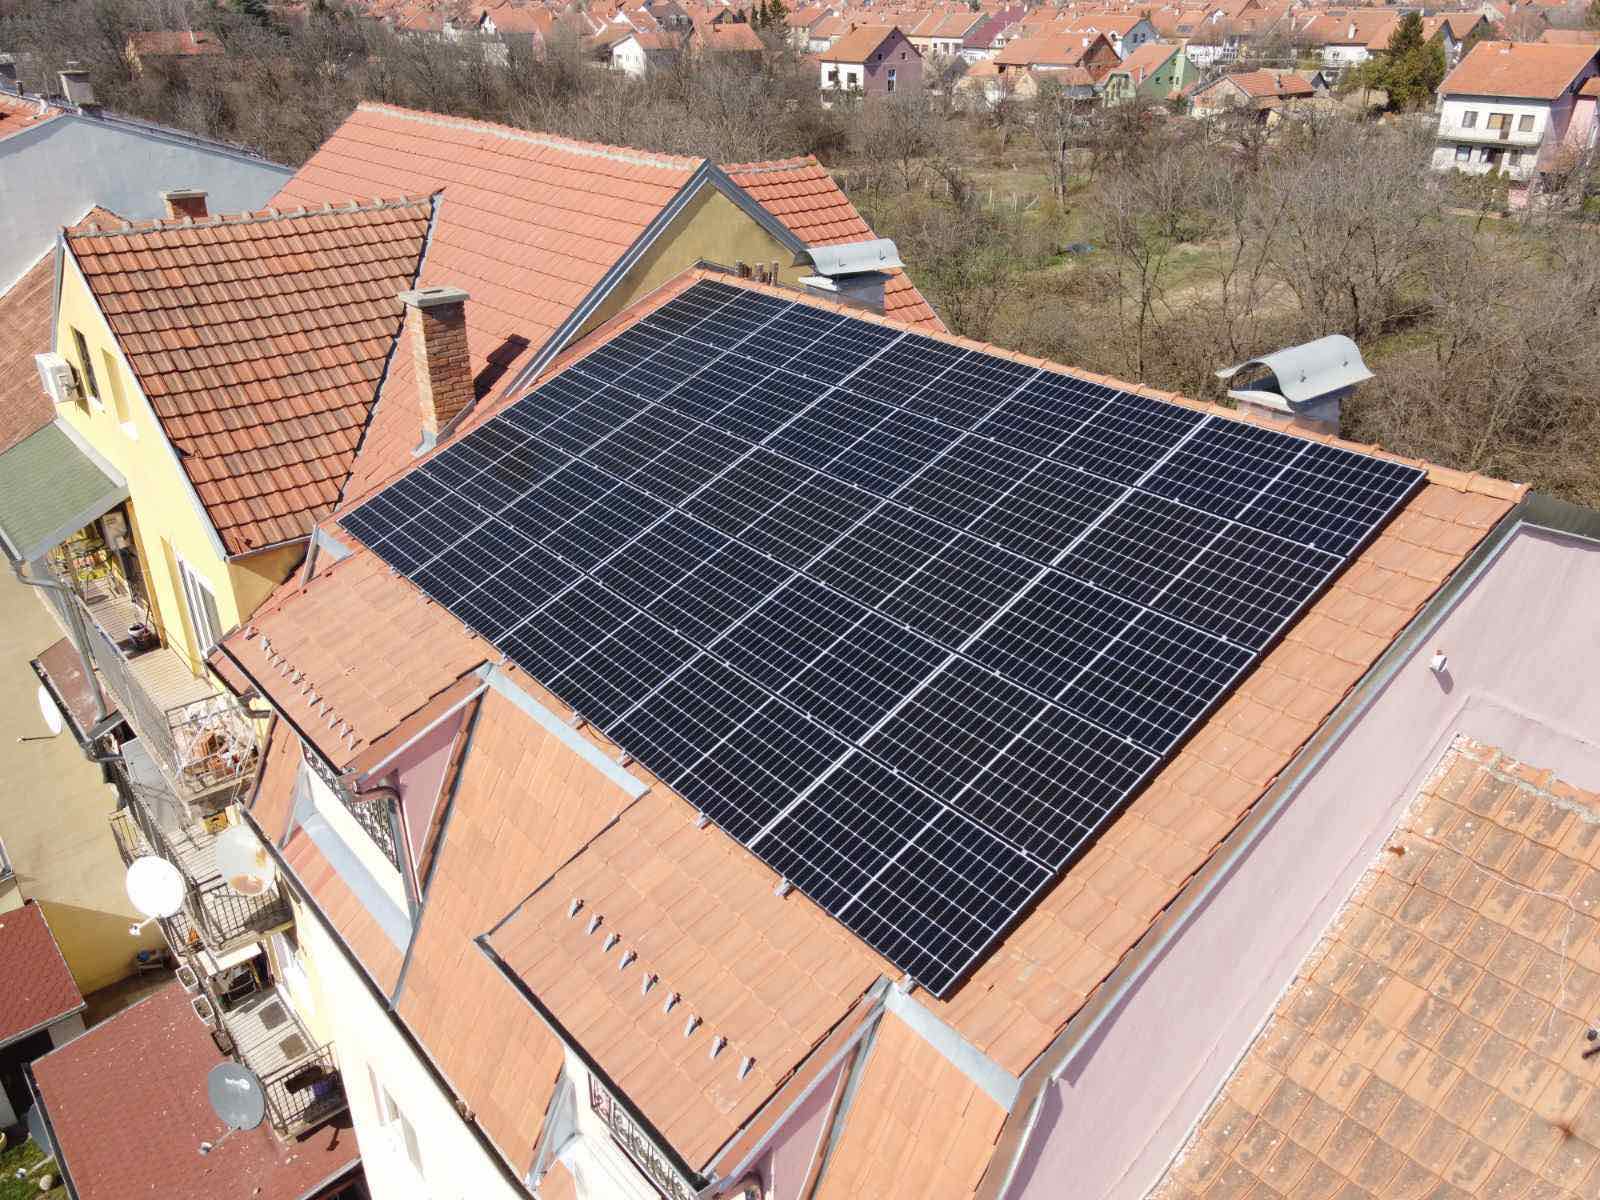 Prva stambena zajednica prozjumer registrovana u Pančevu ima solarnu elektranu od 9,5 kW - Šta se sve dobija za oko 15.000 EUR